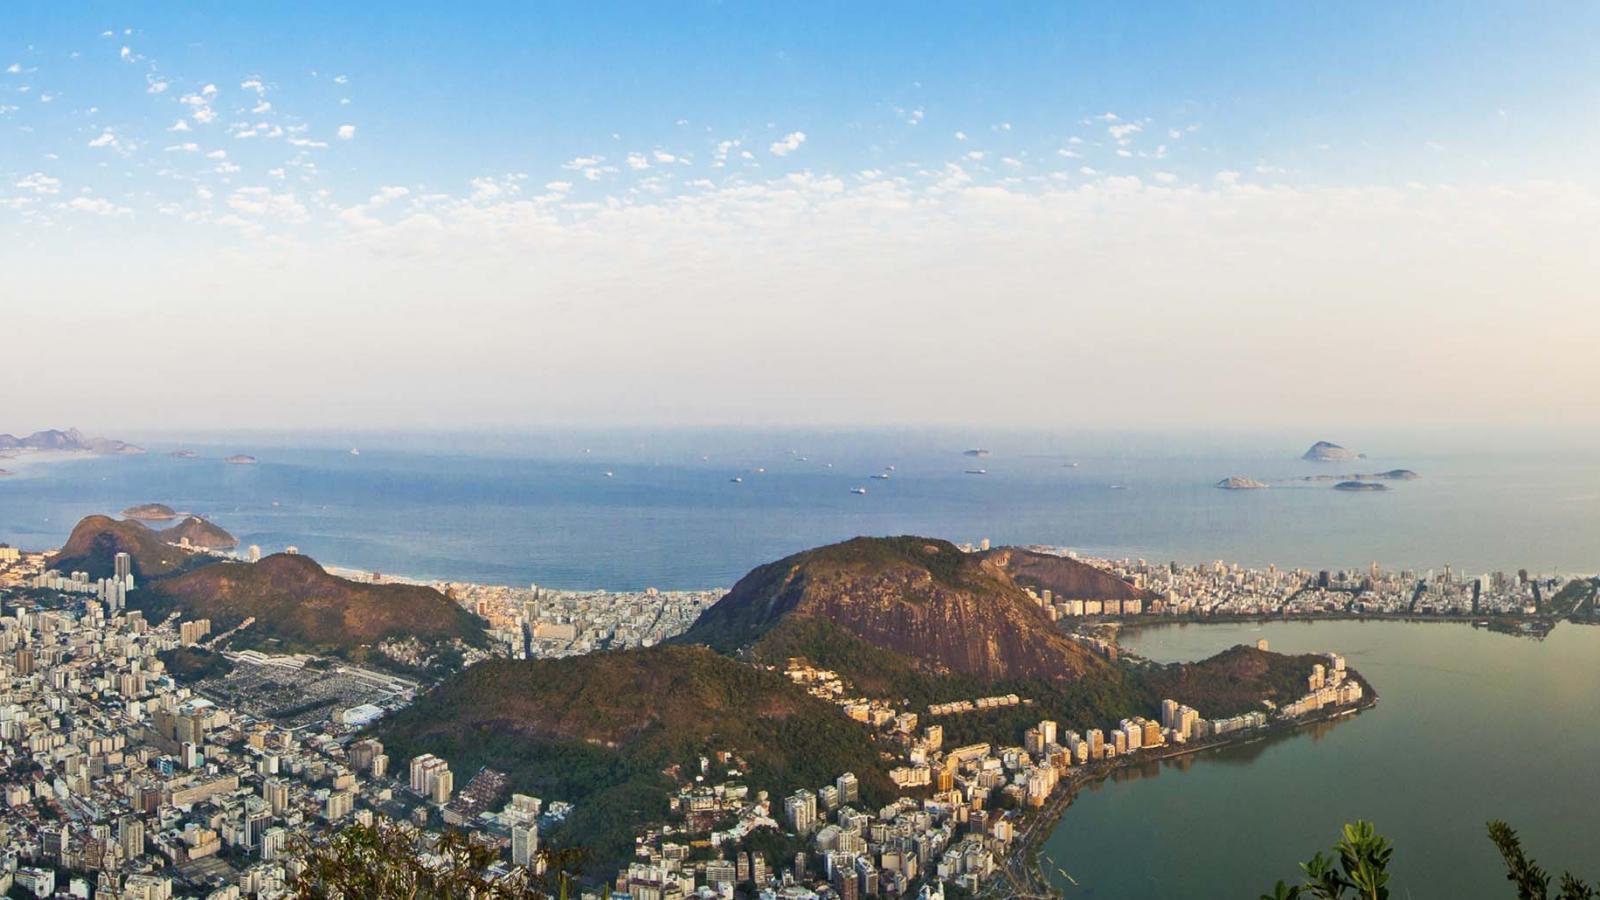 My experiences in Rio de Janeiro